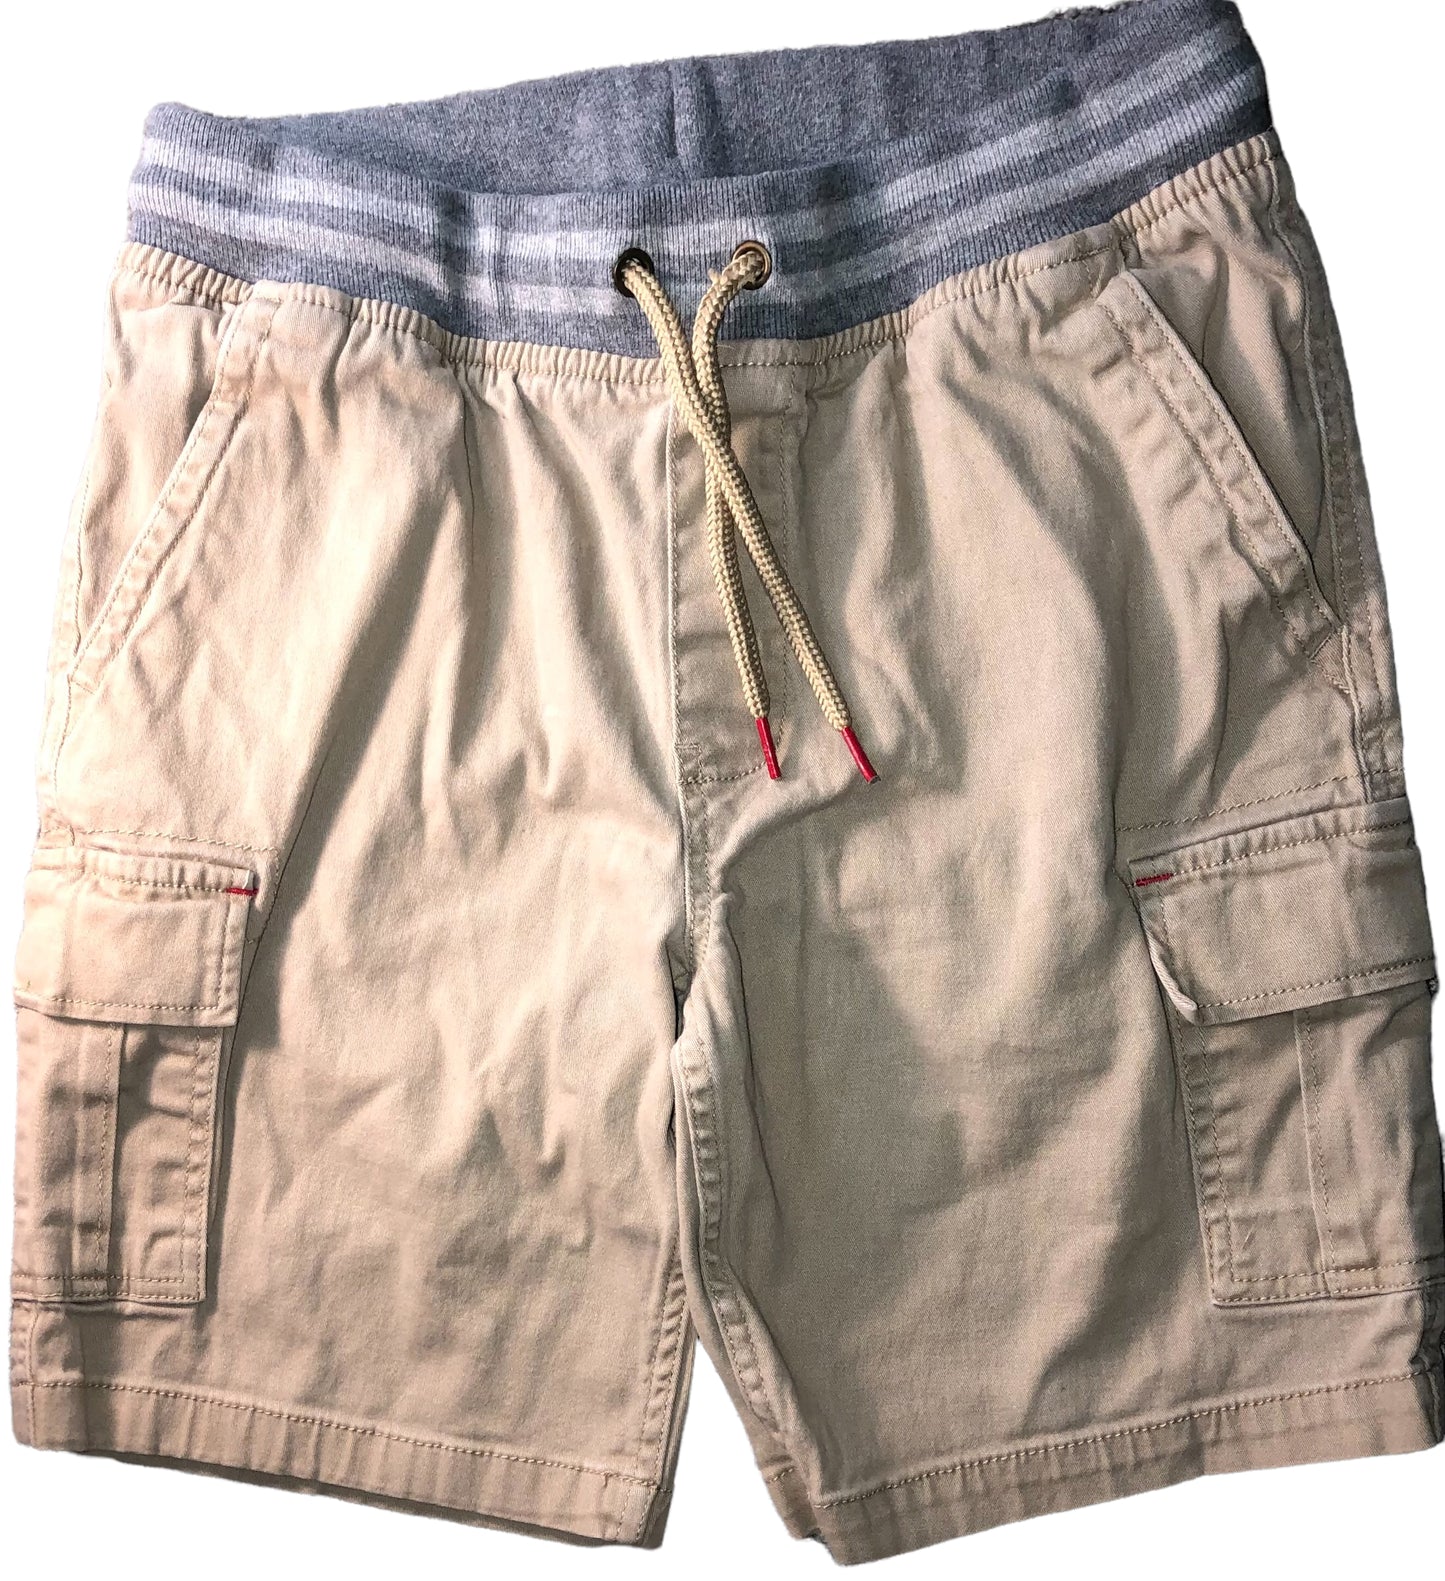 Boy’s Cargo Shorts - Variety Sales Etc.